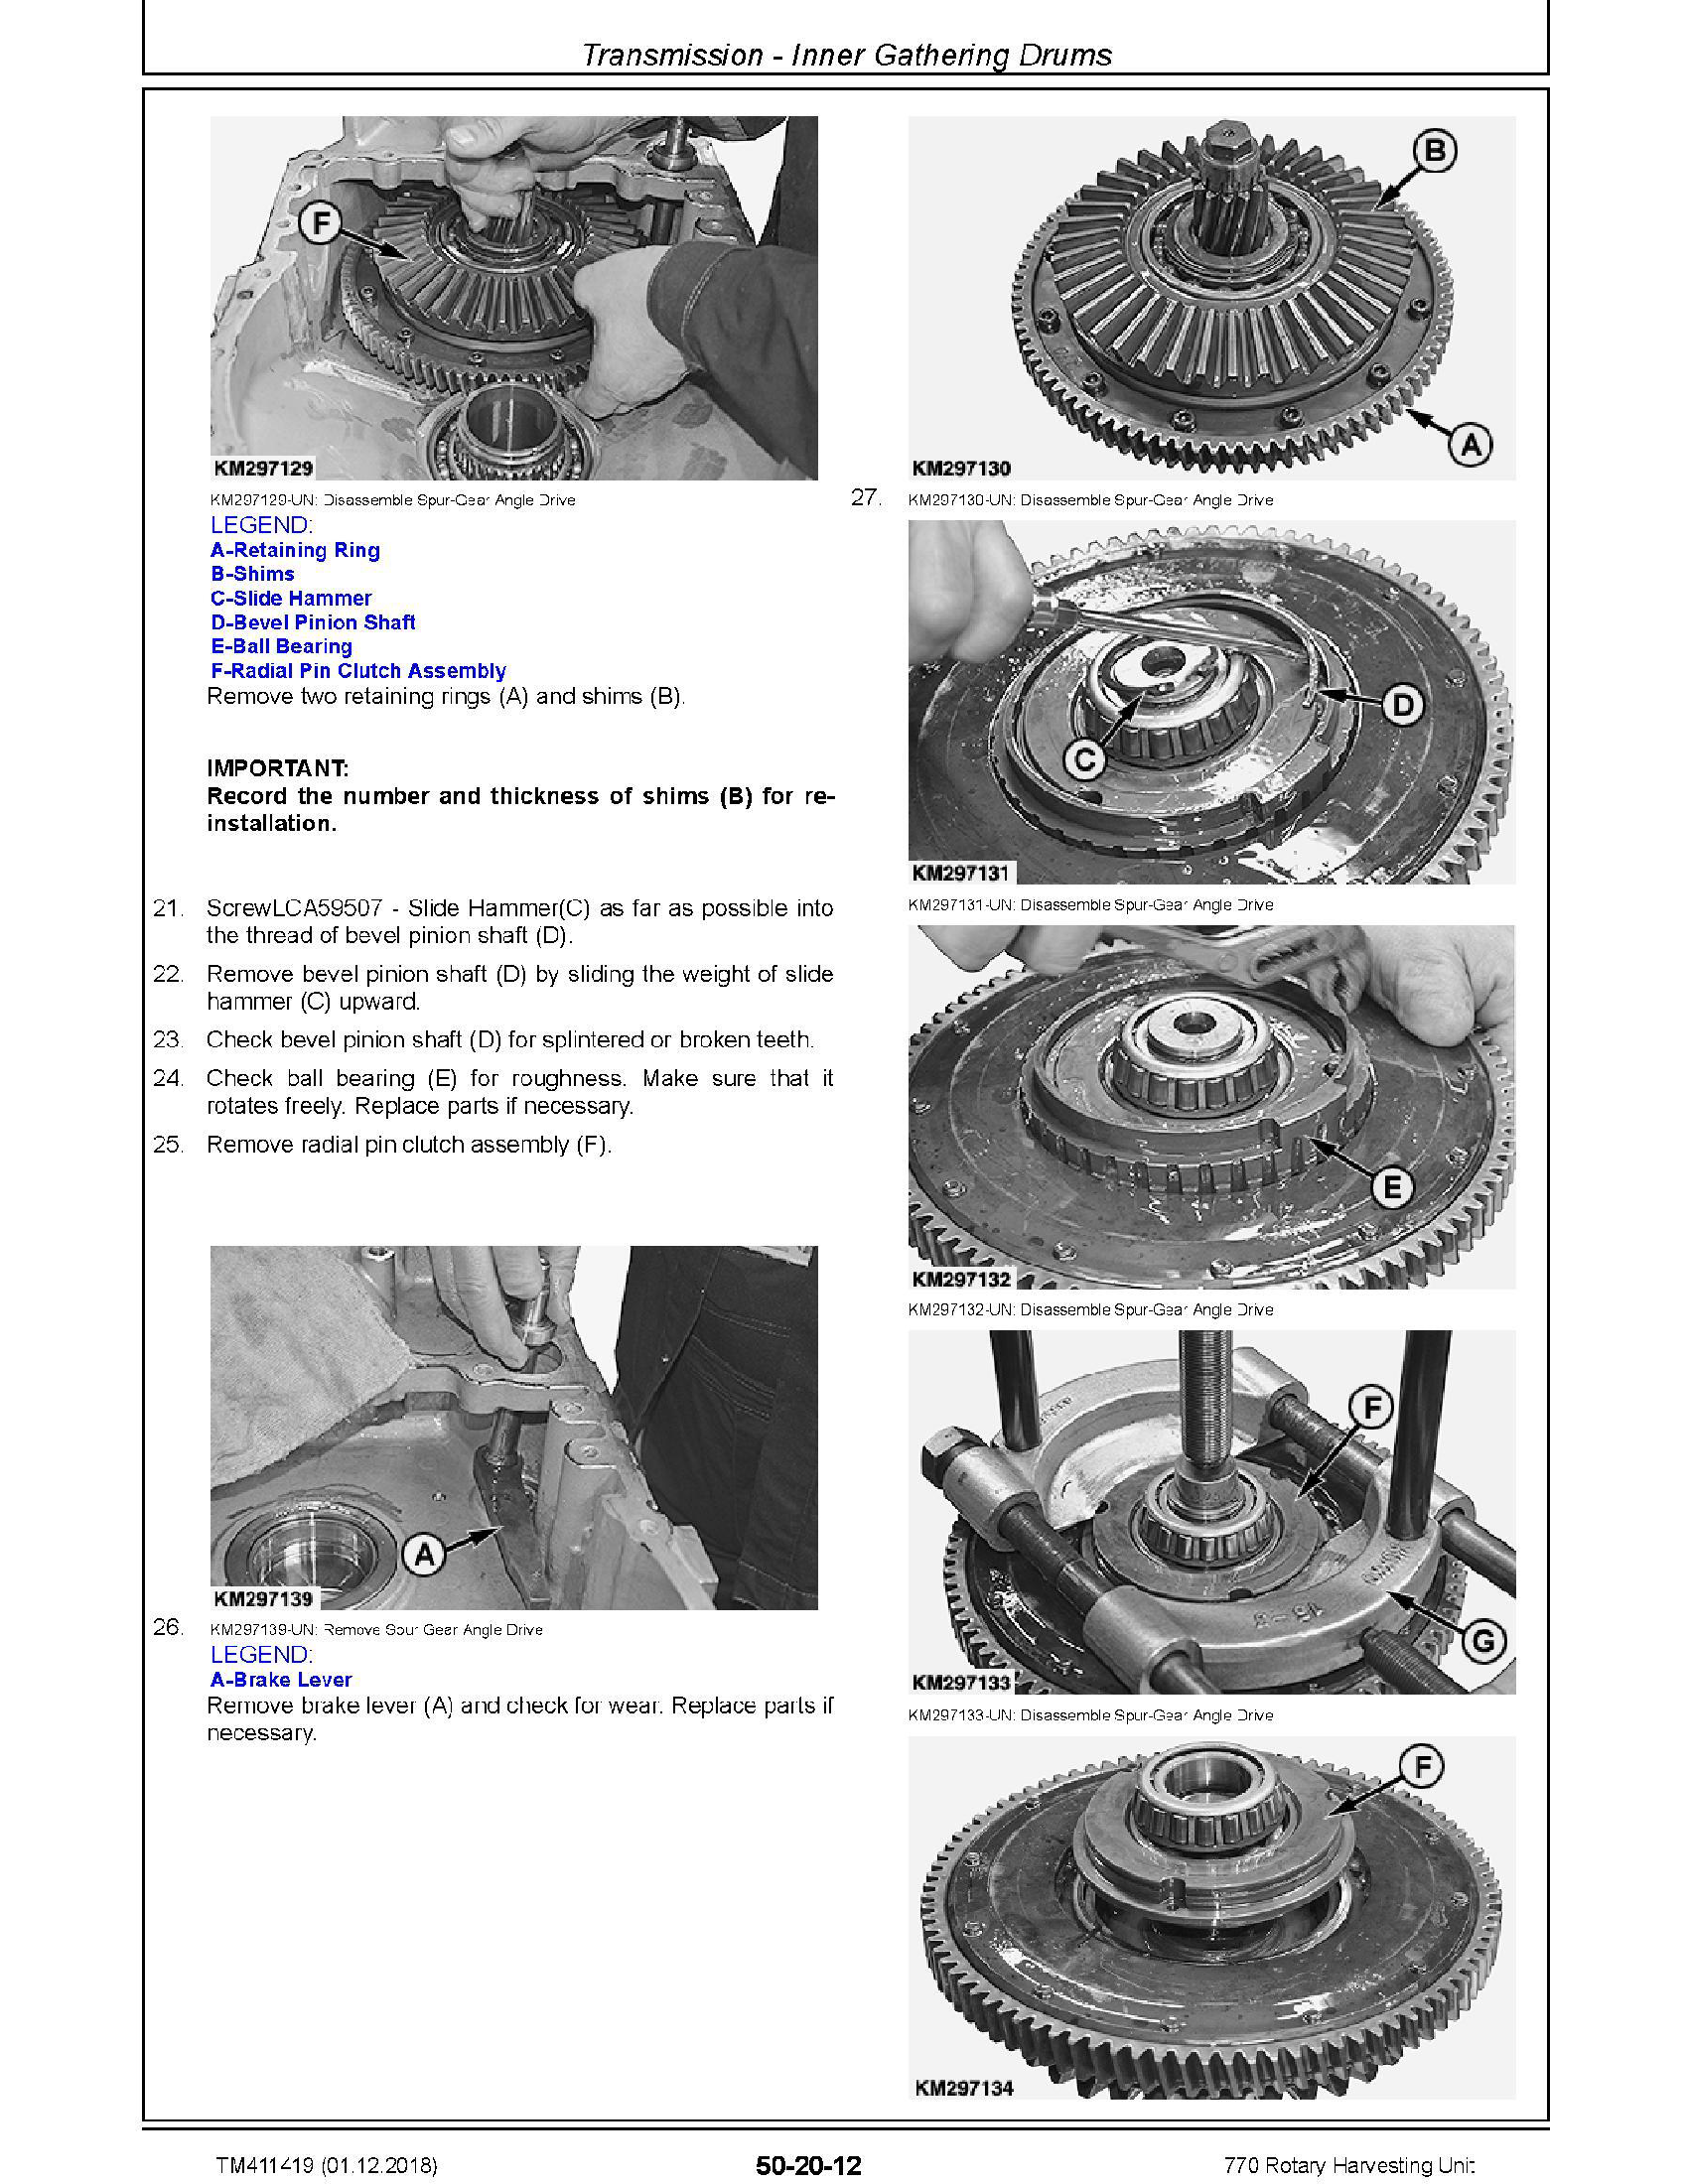 John Deere 744K-II manual pdf